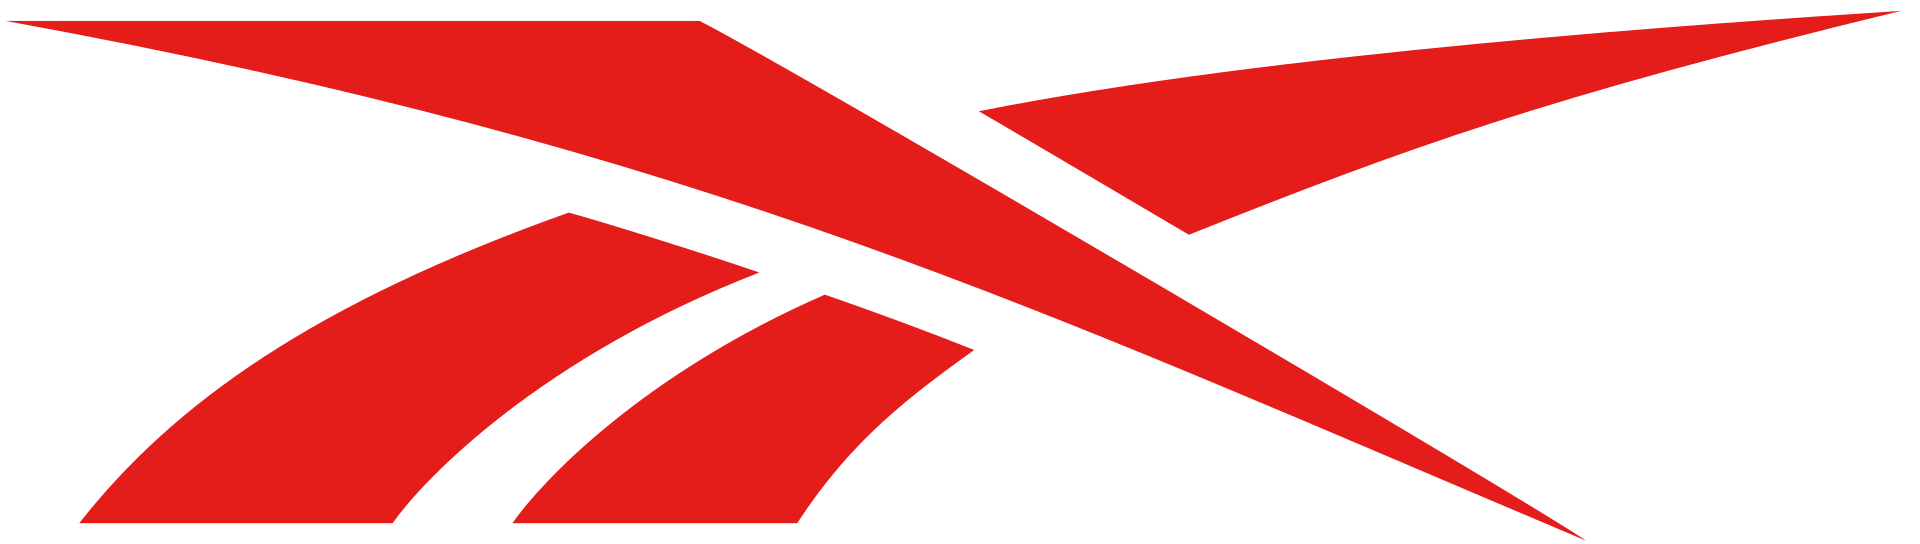 Reebok Red logo